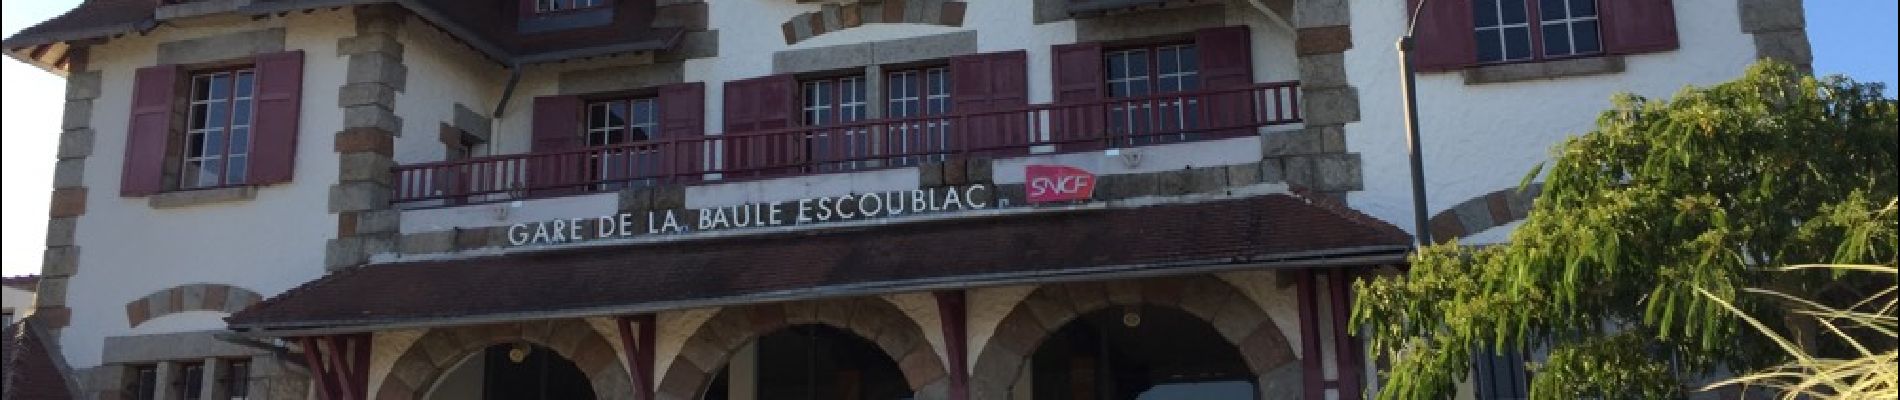 Percorso Marcia La Baule-Escoublac - gare  La Baule Escoubac - Photo